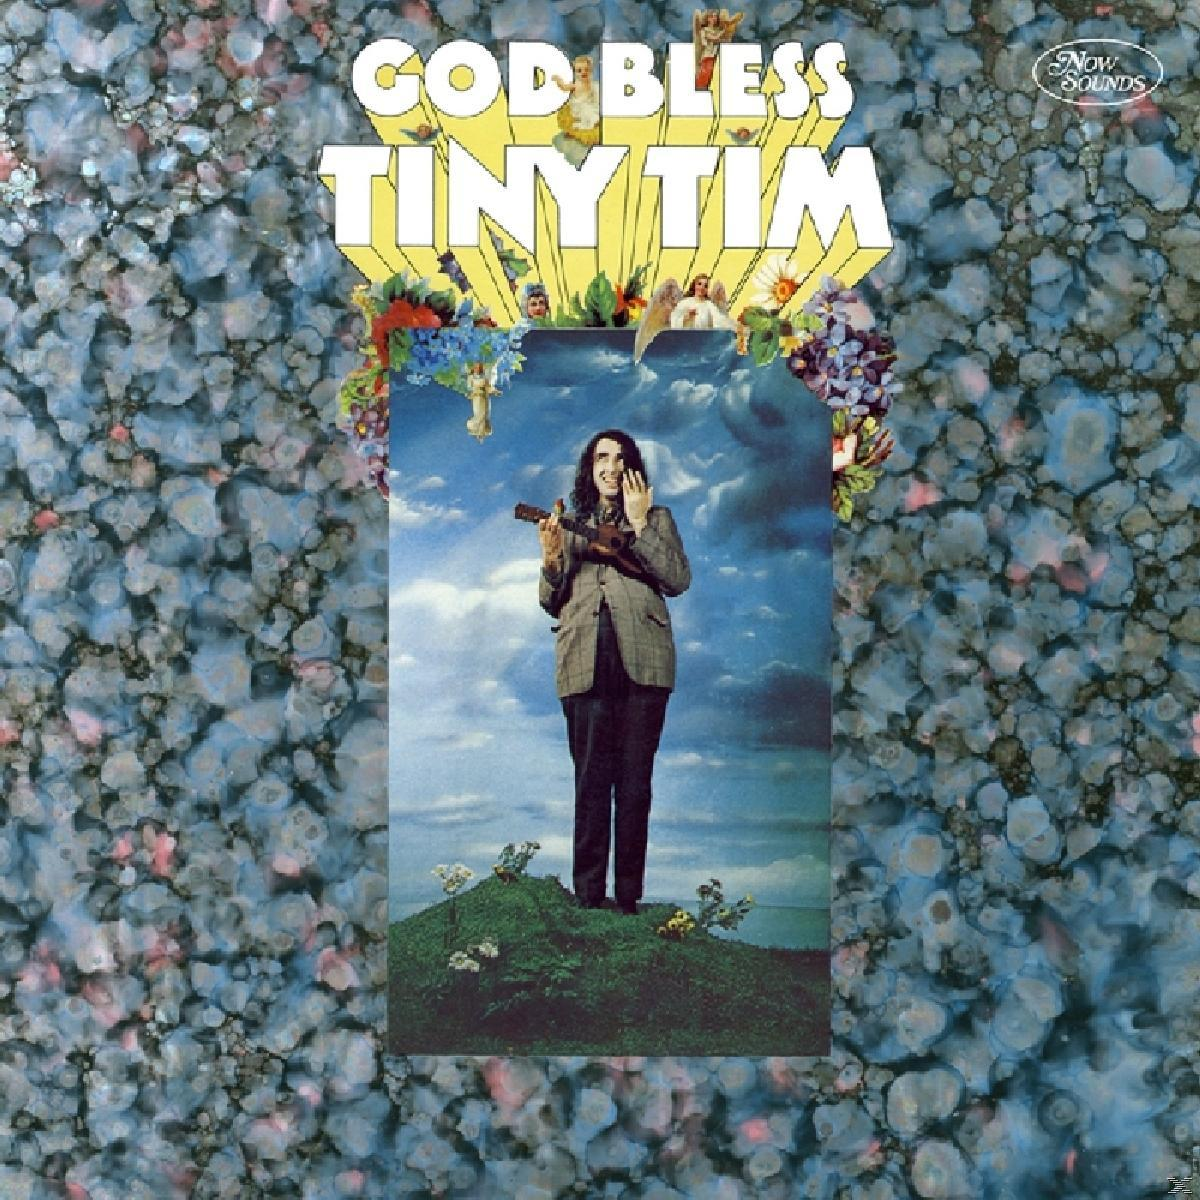 Tiny Tim - (CD) Tim Tiny - Bless God